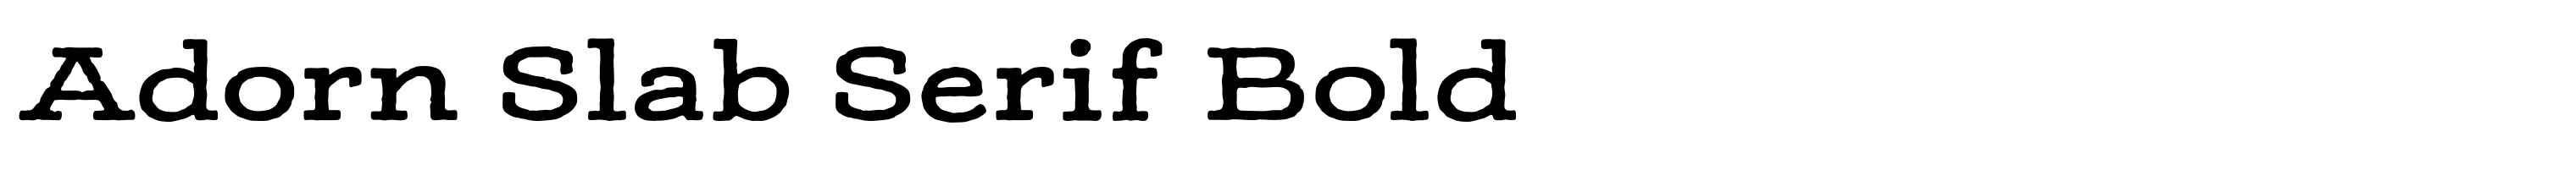 Adorn Slab Serif Bold